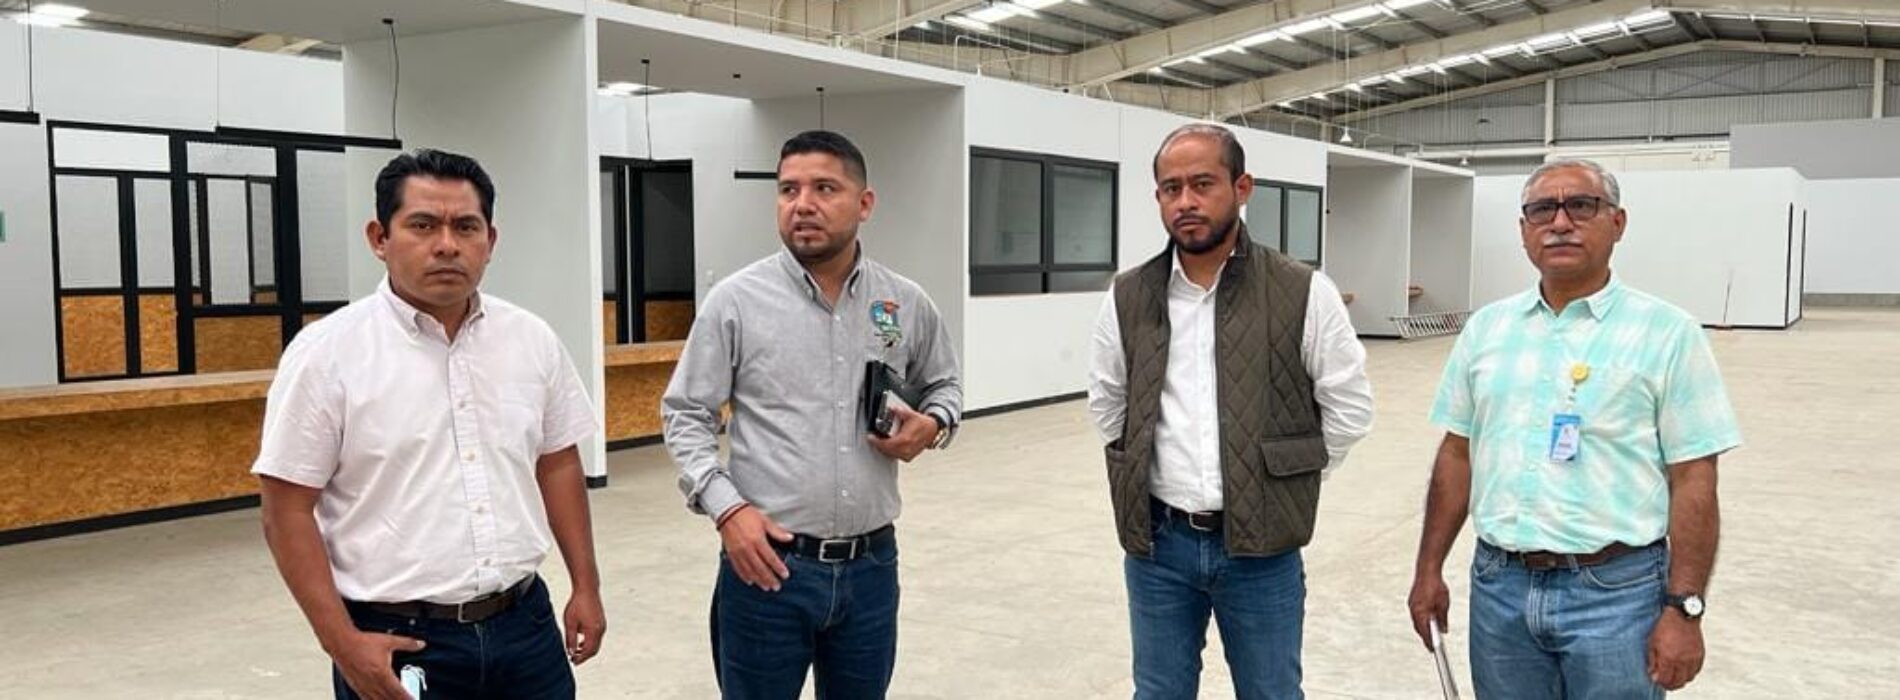 Realiza recorrido el Jefe de Administración del Imss y el Líder del Sidicato al nuevo Almacen Imss Bienestar Oaxaca